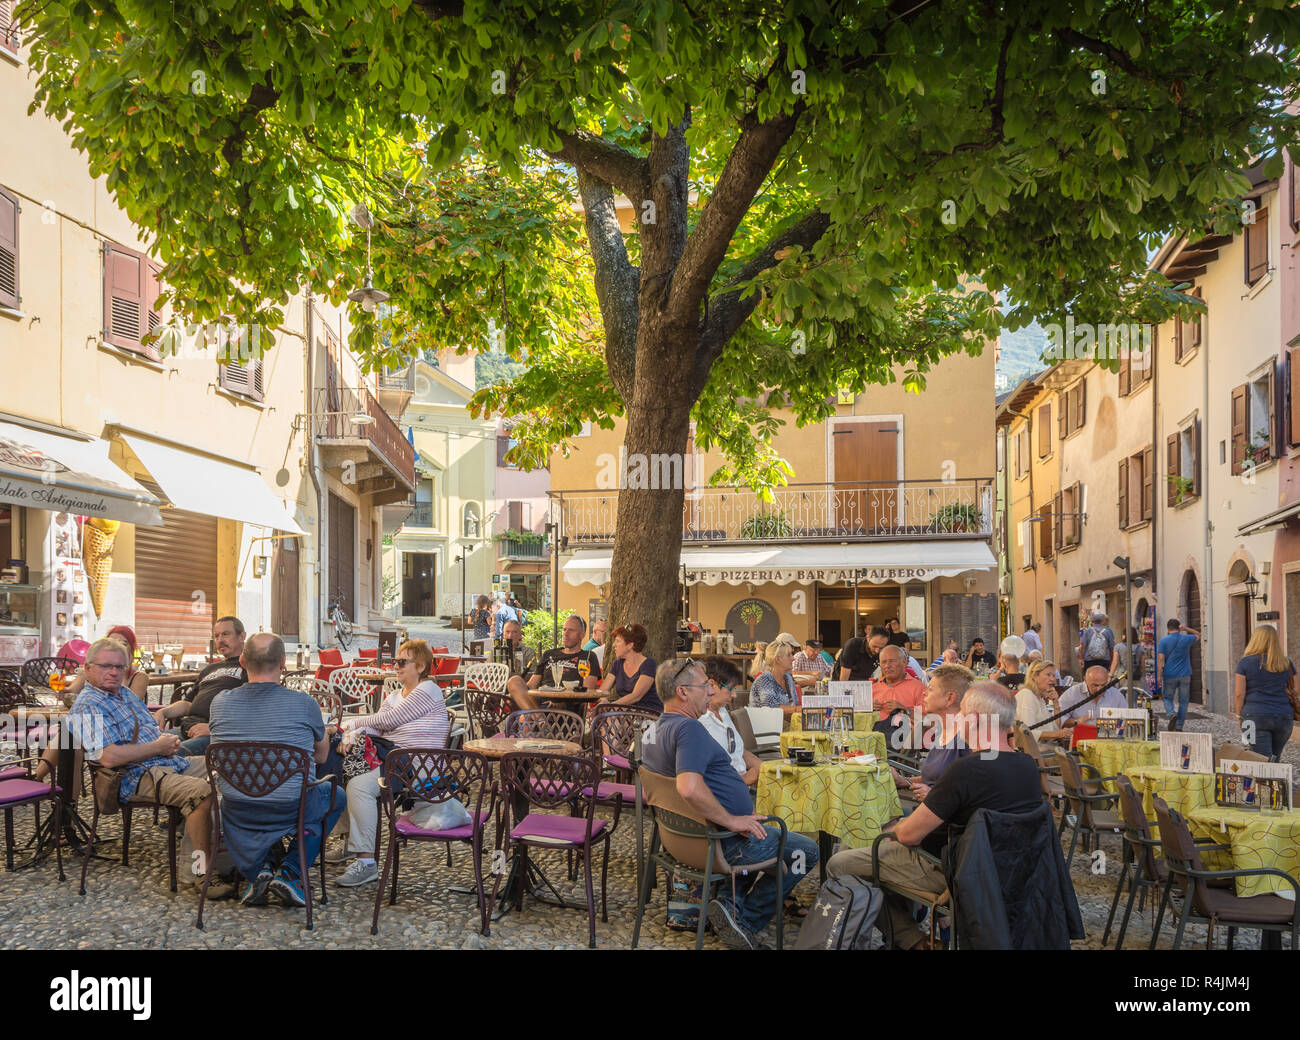 Street Café im Zentrum des mittelalterlichen Dorfes von Malcesine. Es ist einer der charakteristischsten Orte des Gardasees in der Provinz von Verona, Italien. Stockfoto